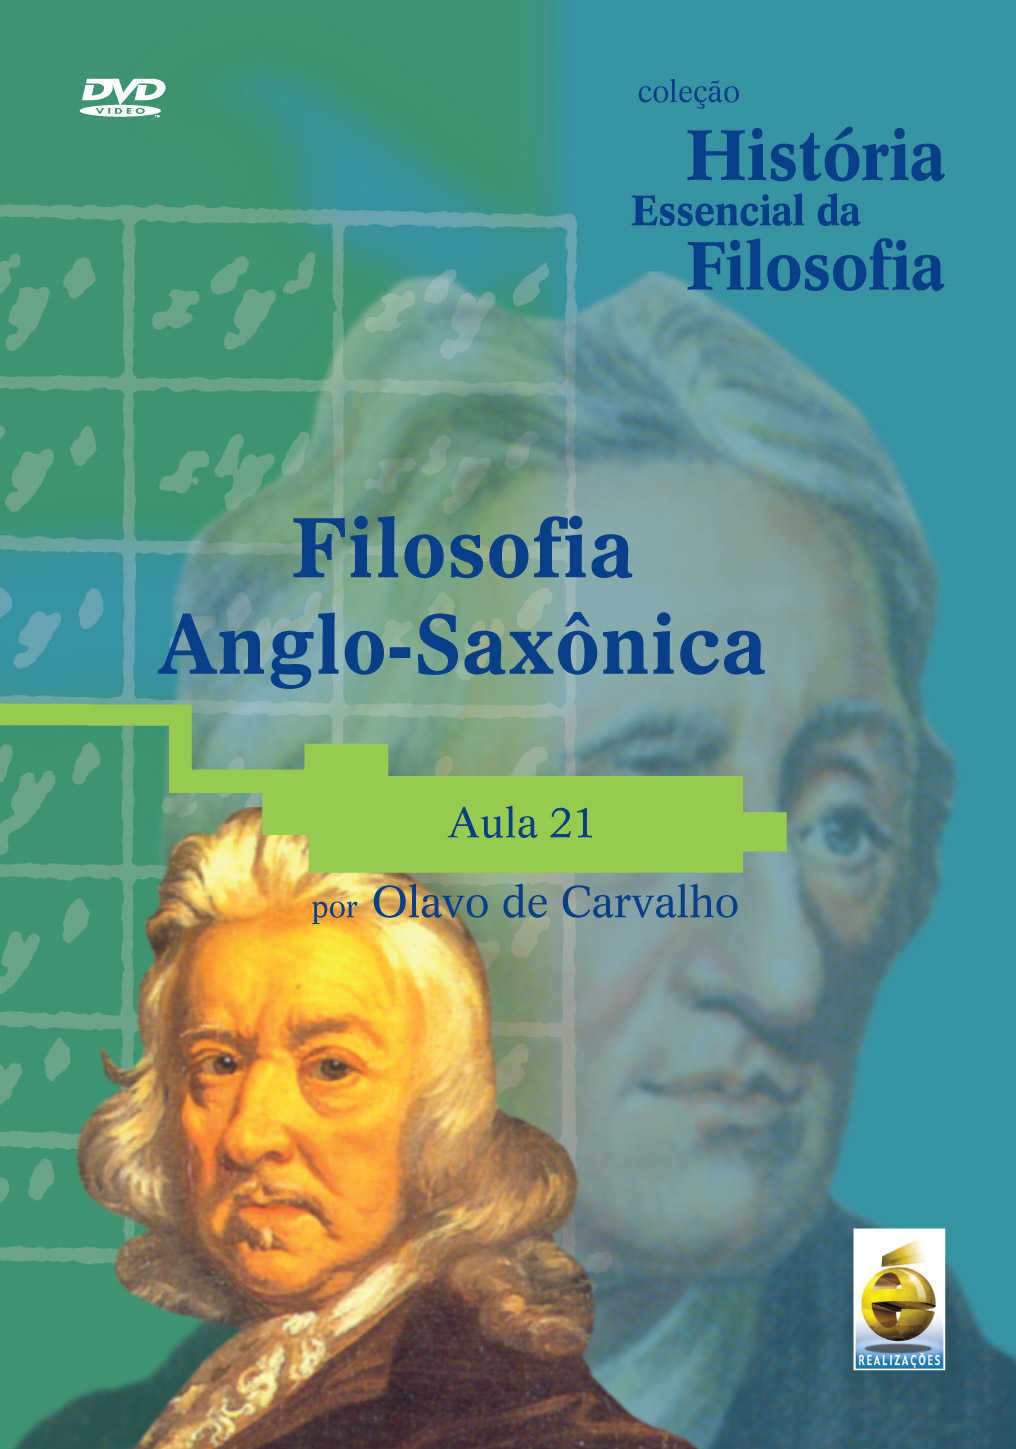 Dvd – Coleção História Essencial Da Filosofia – Filosofia Anglo-Saxônica | Aula 21